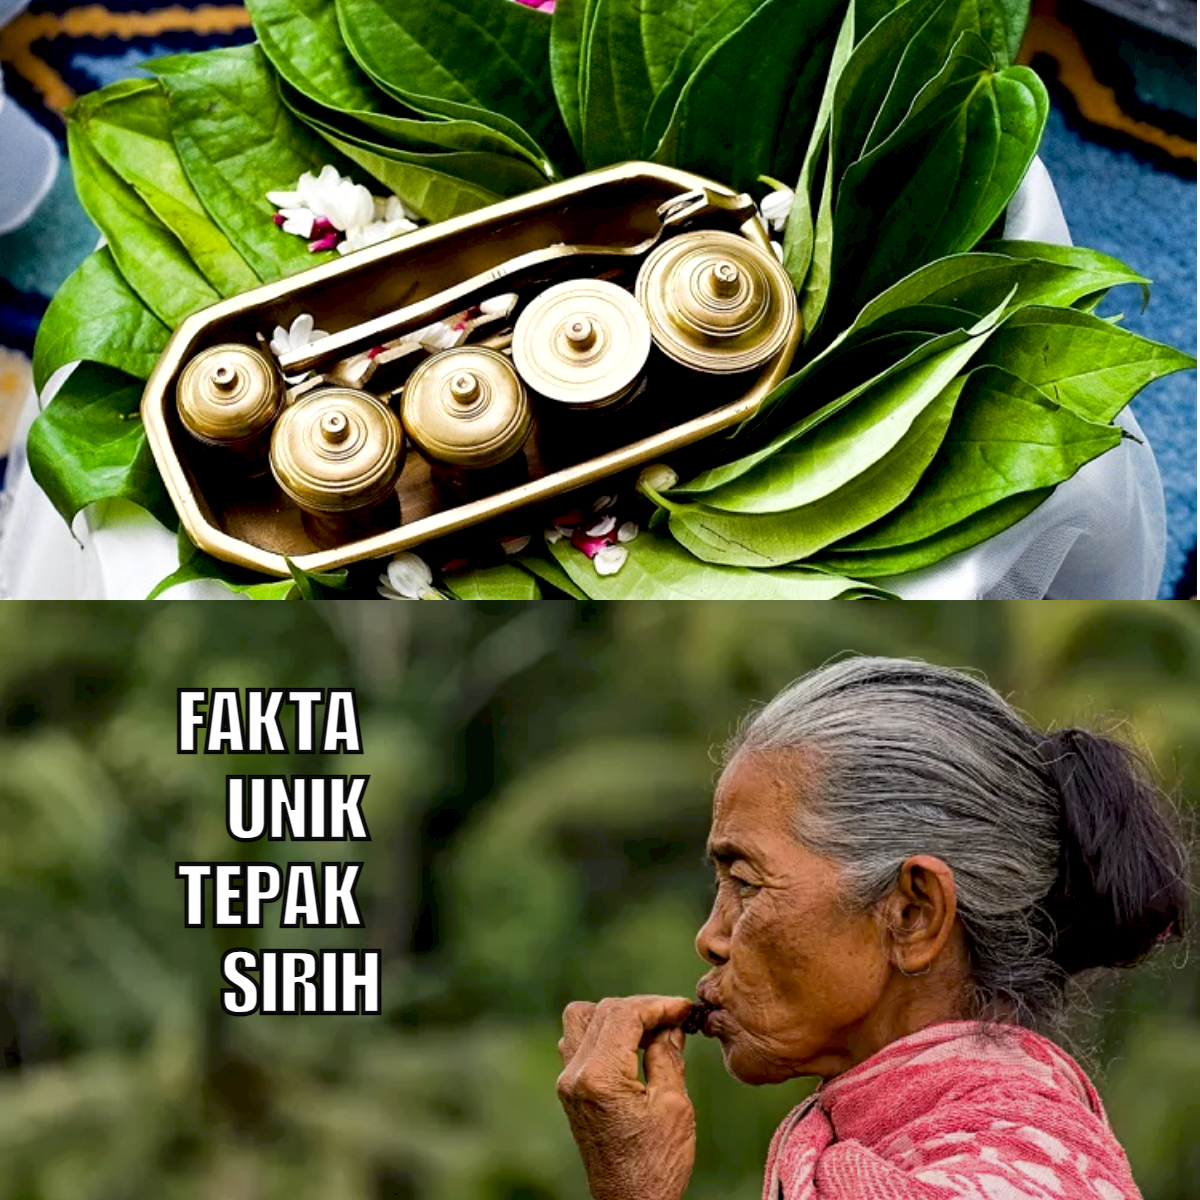 Jejak Budaya Melayu, Ini 5 Fakta Unik Tepak Sirih yang Mengagumkan dari Tradisi Indonesia!